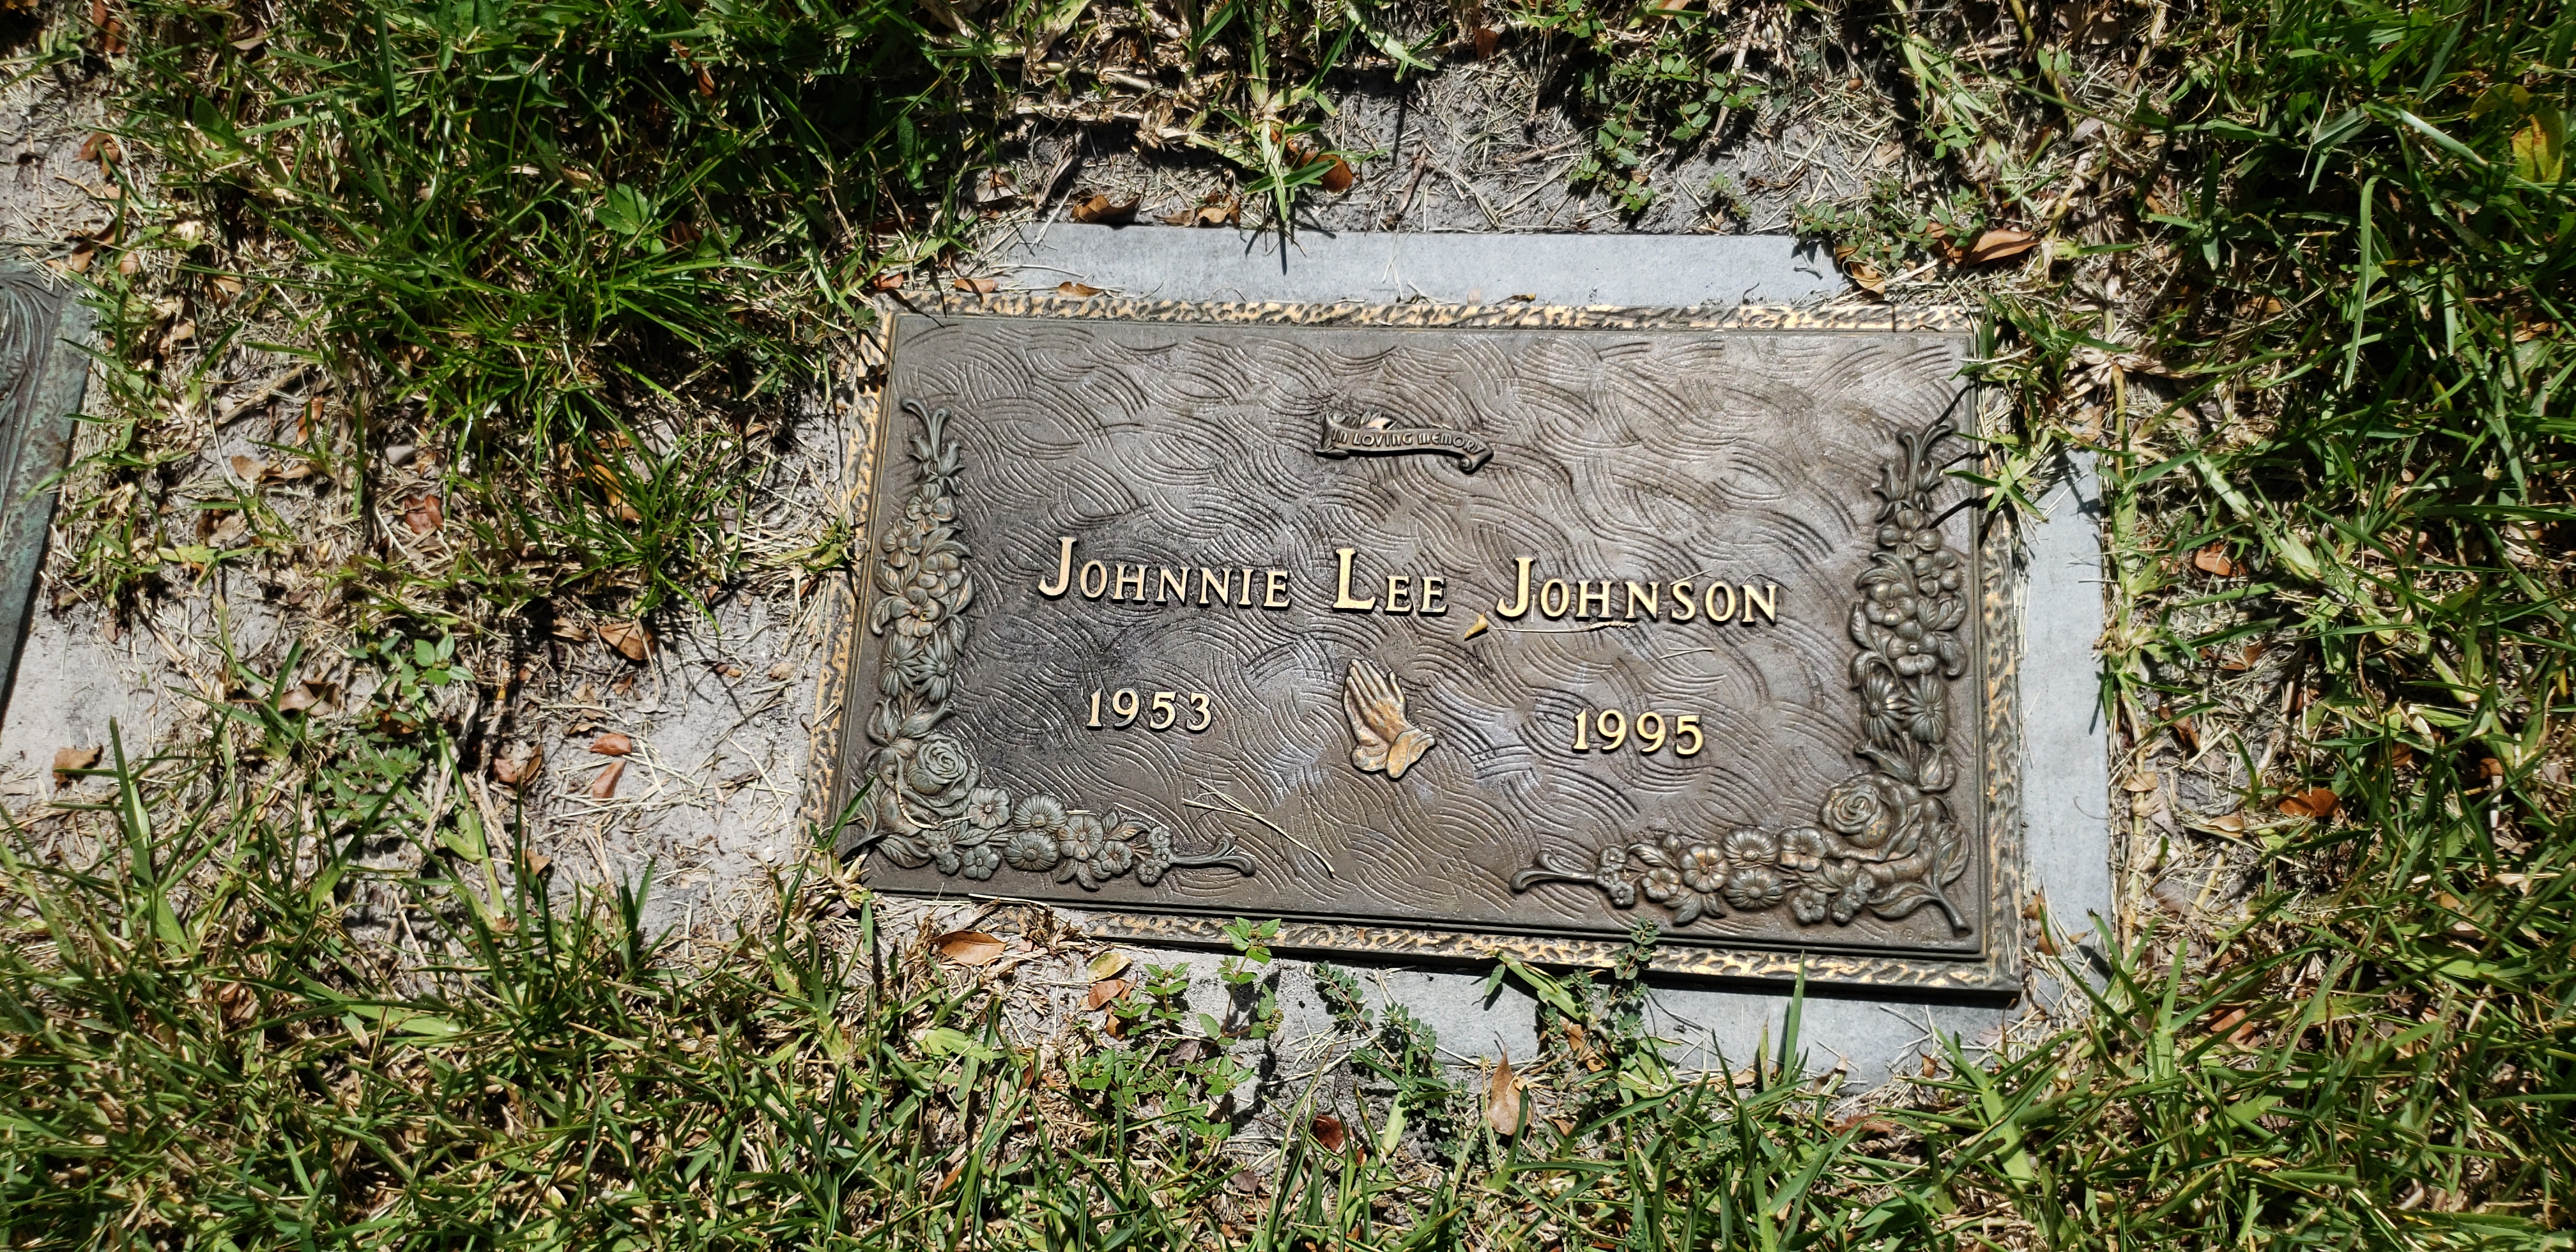 Johnnie Lee Johnson